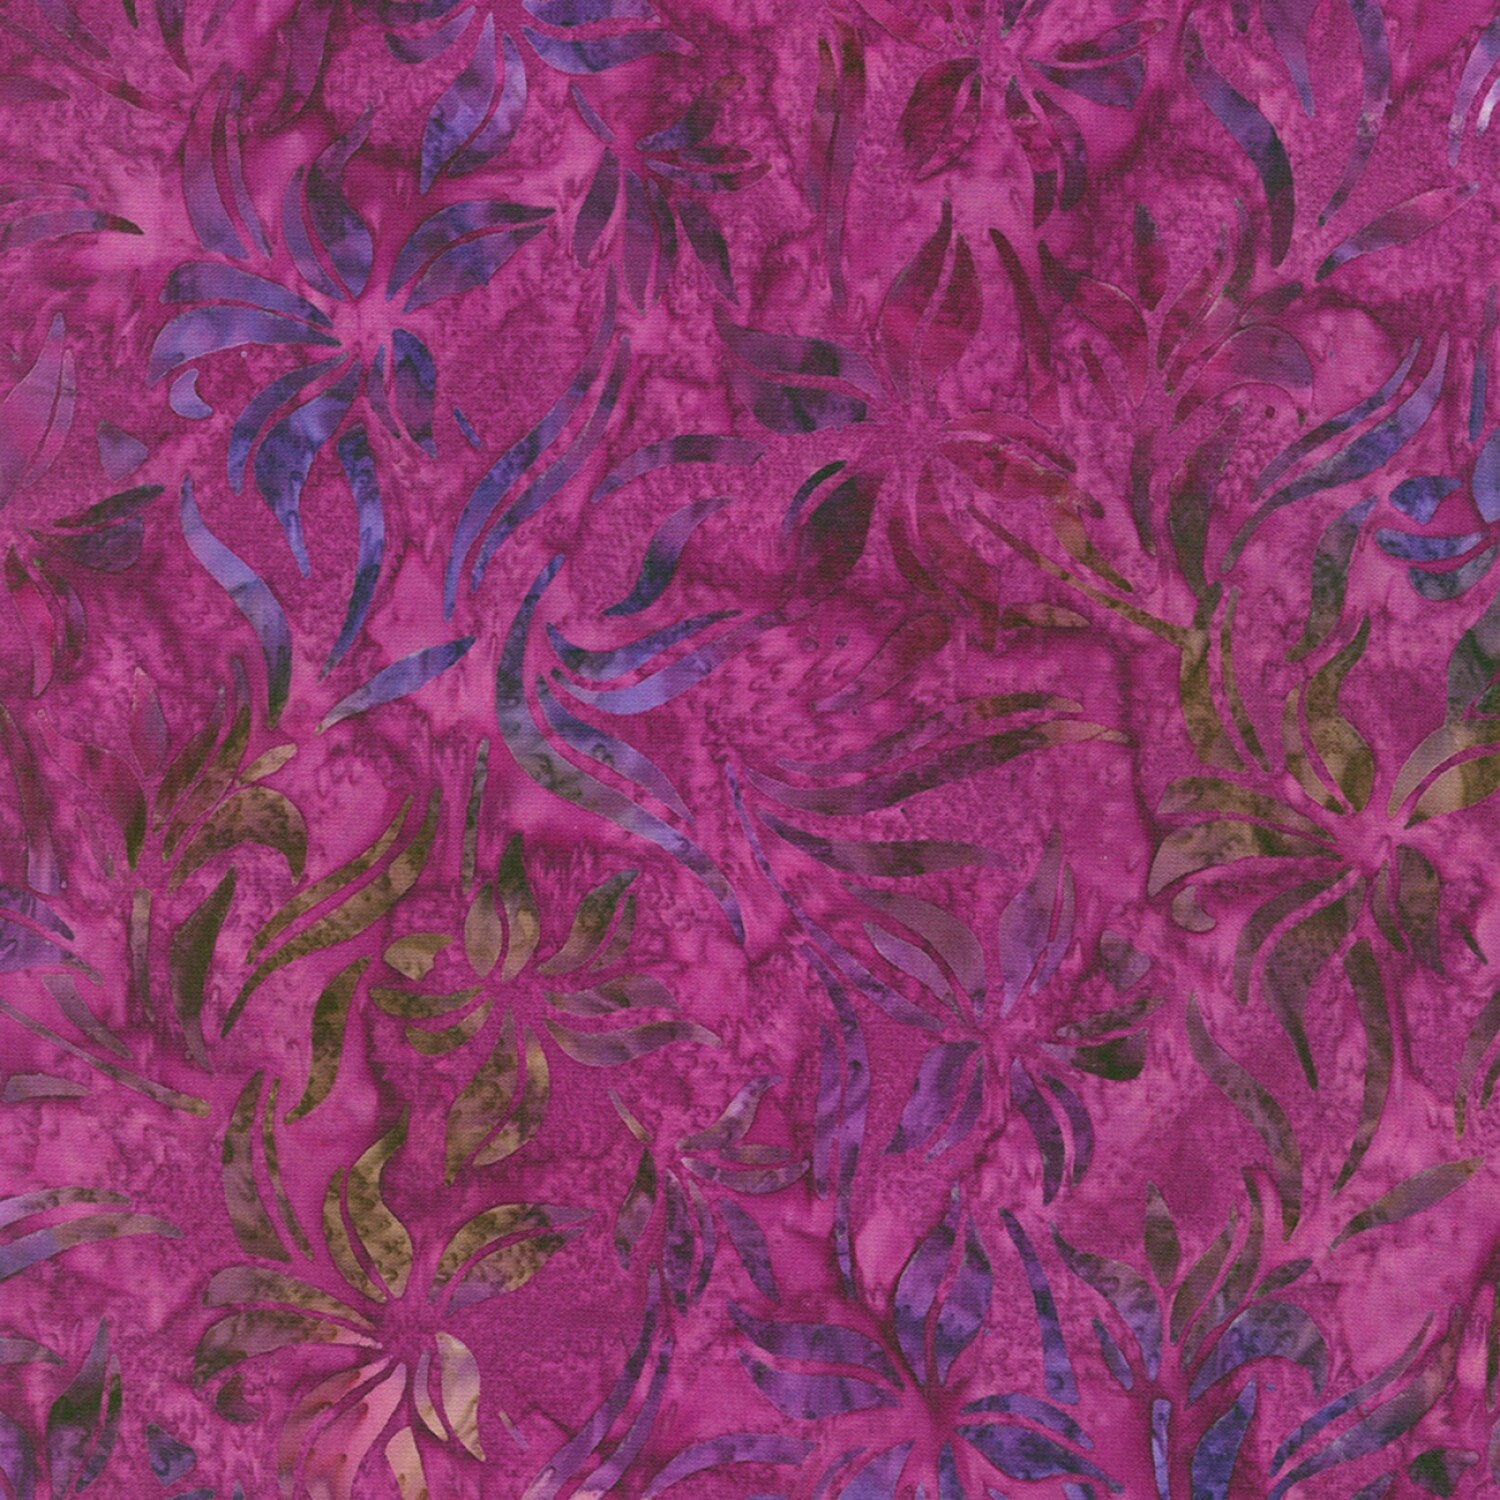 Artisan Batiks Lily Bella 21 Piece Fat Quarter Bundle, Robert Kaufman FQ-2072-21, Purple Green Floral Batiks, 18 x 22 Fabric Cuts